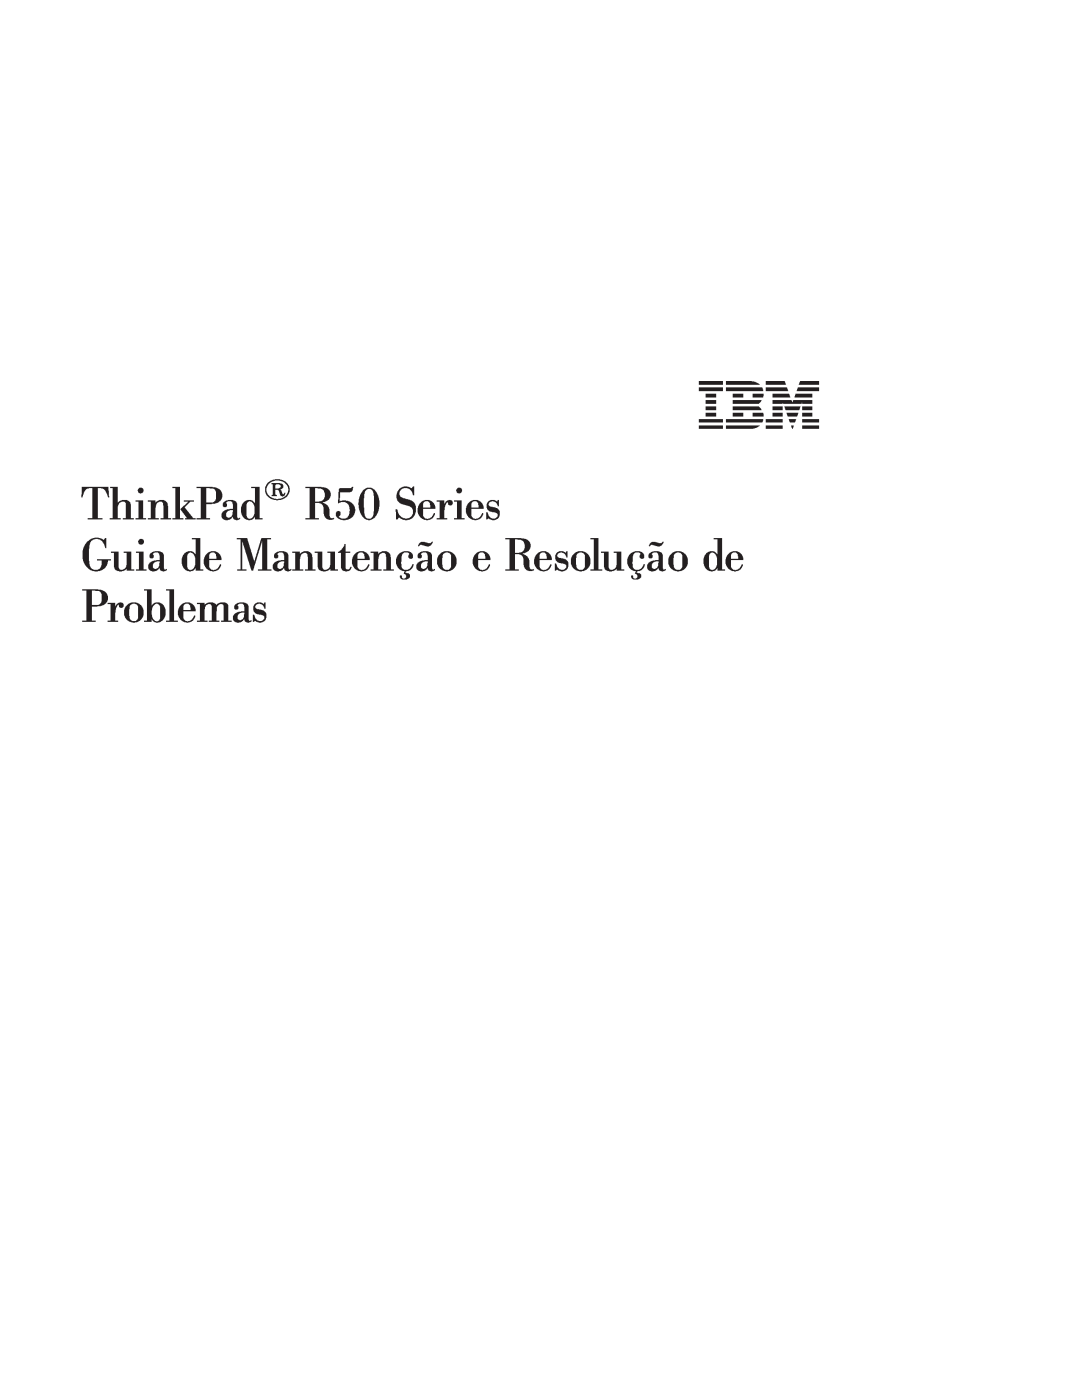 IBM manual ThinkPad R50 Series, Guia de Manutenção e Resolução de Problemas 